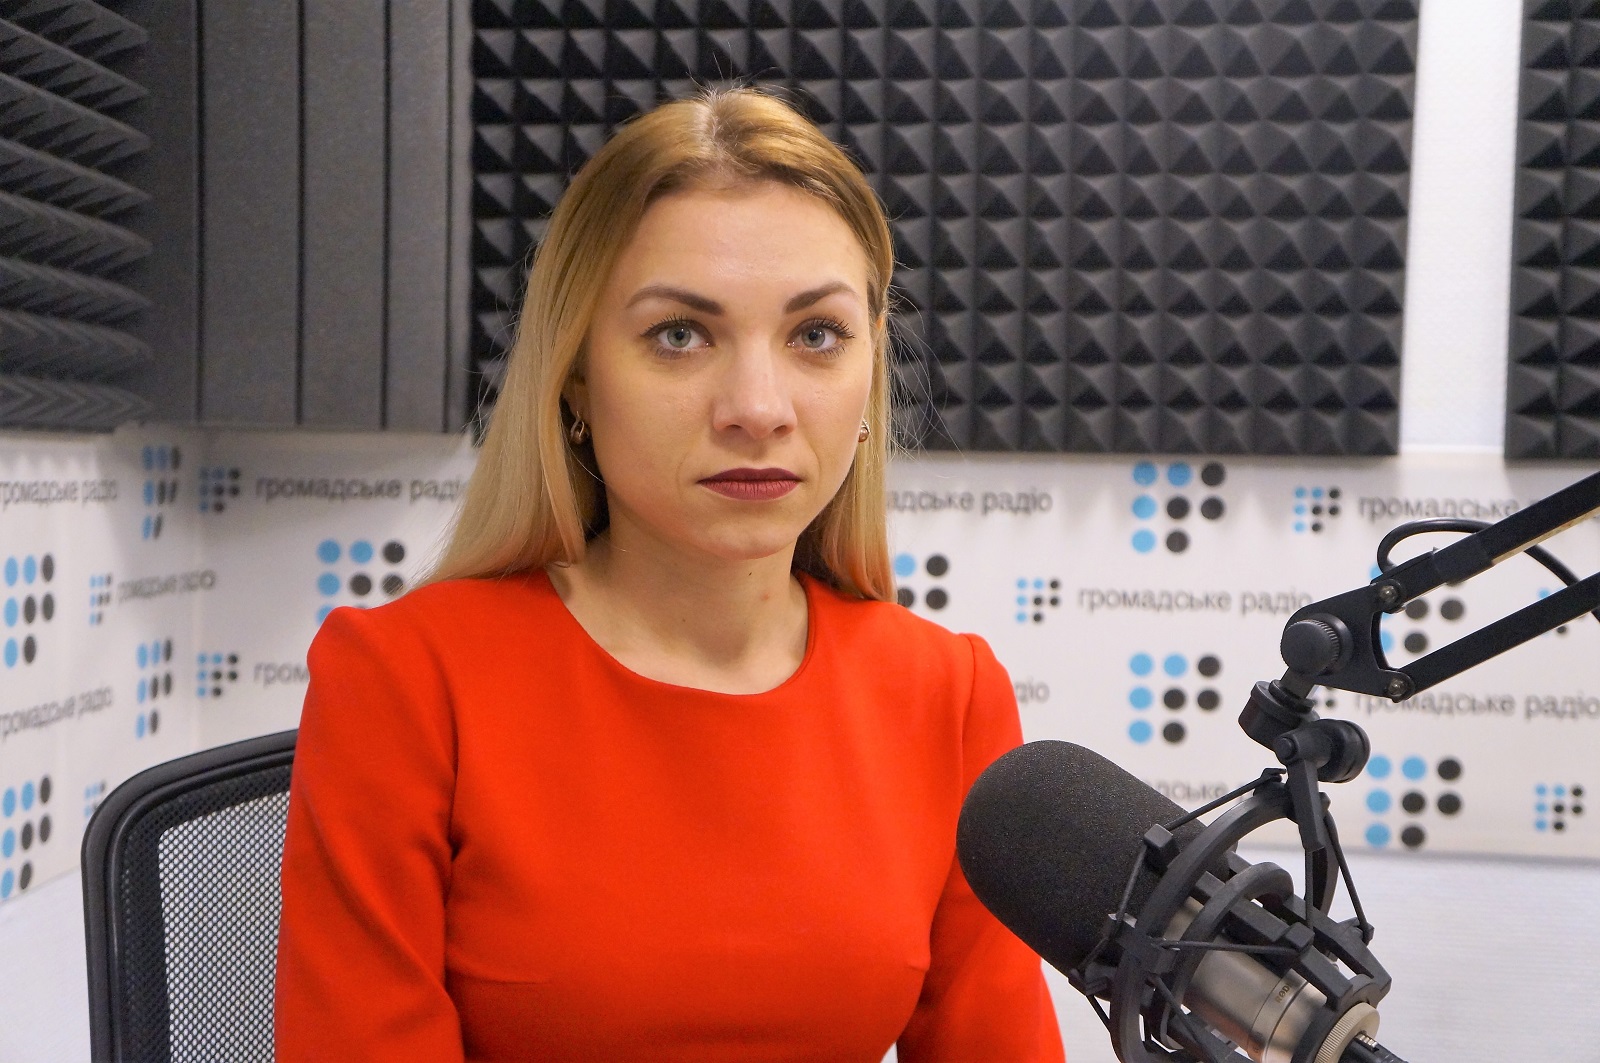 Запроса на «мир любой ценой» на Донбассе уже нет, — Золкина